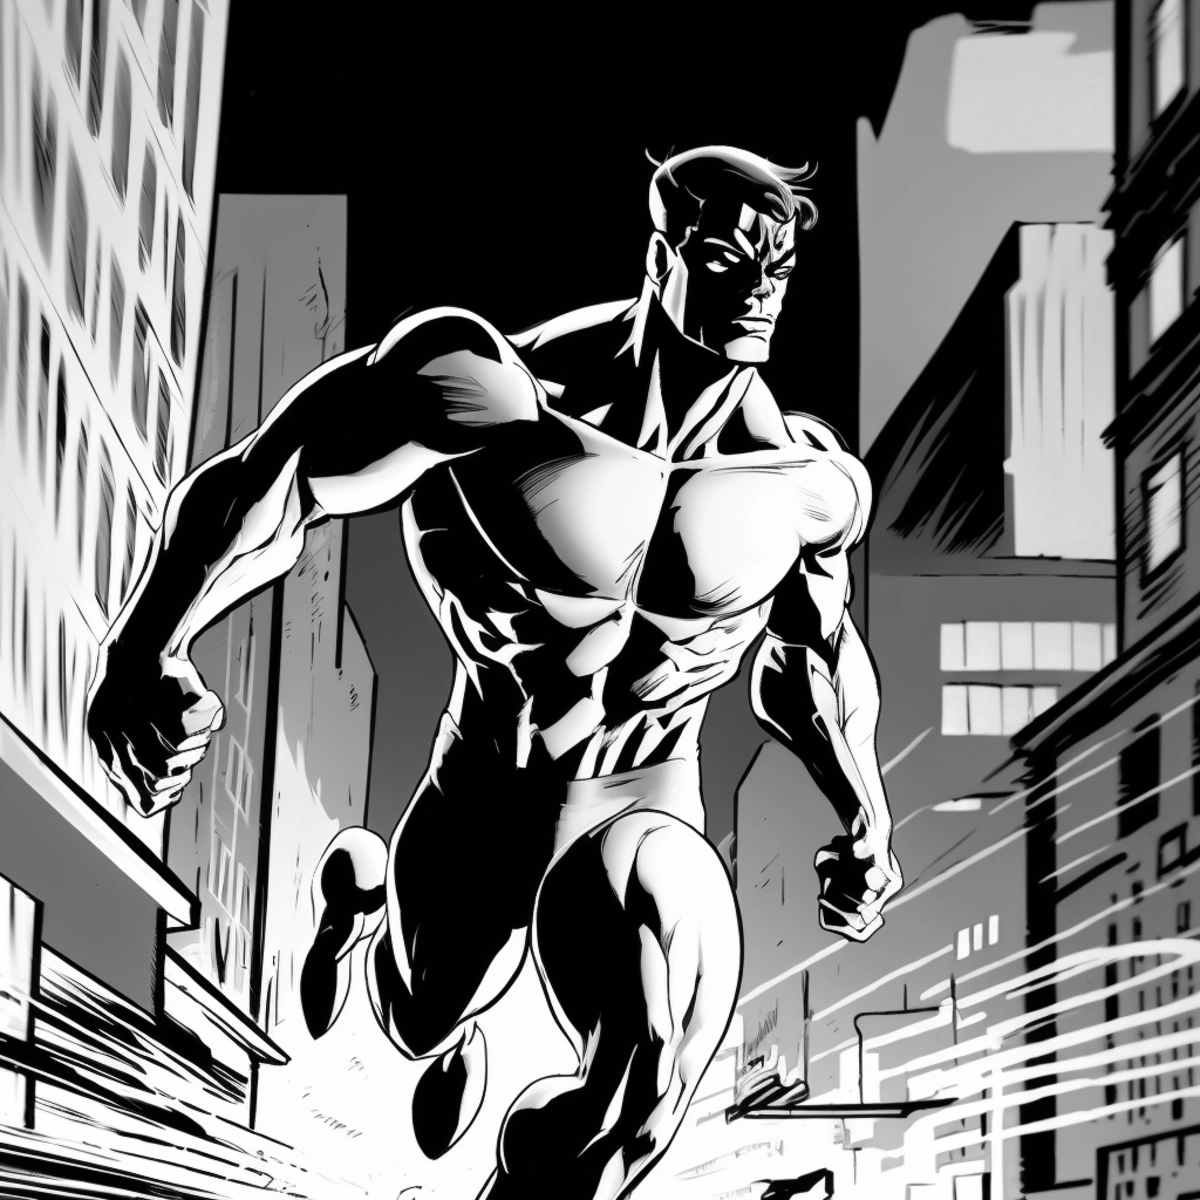 Динамичная иллюстрация в стиле комиксов, на которой супергерой бросается в бой на фоне городского пейзажа.